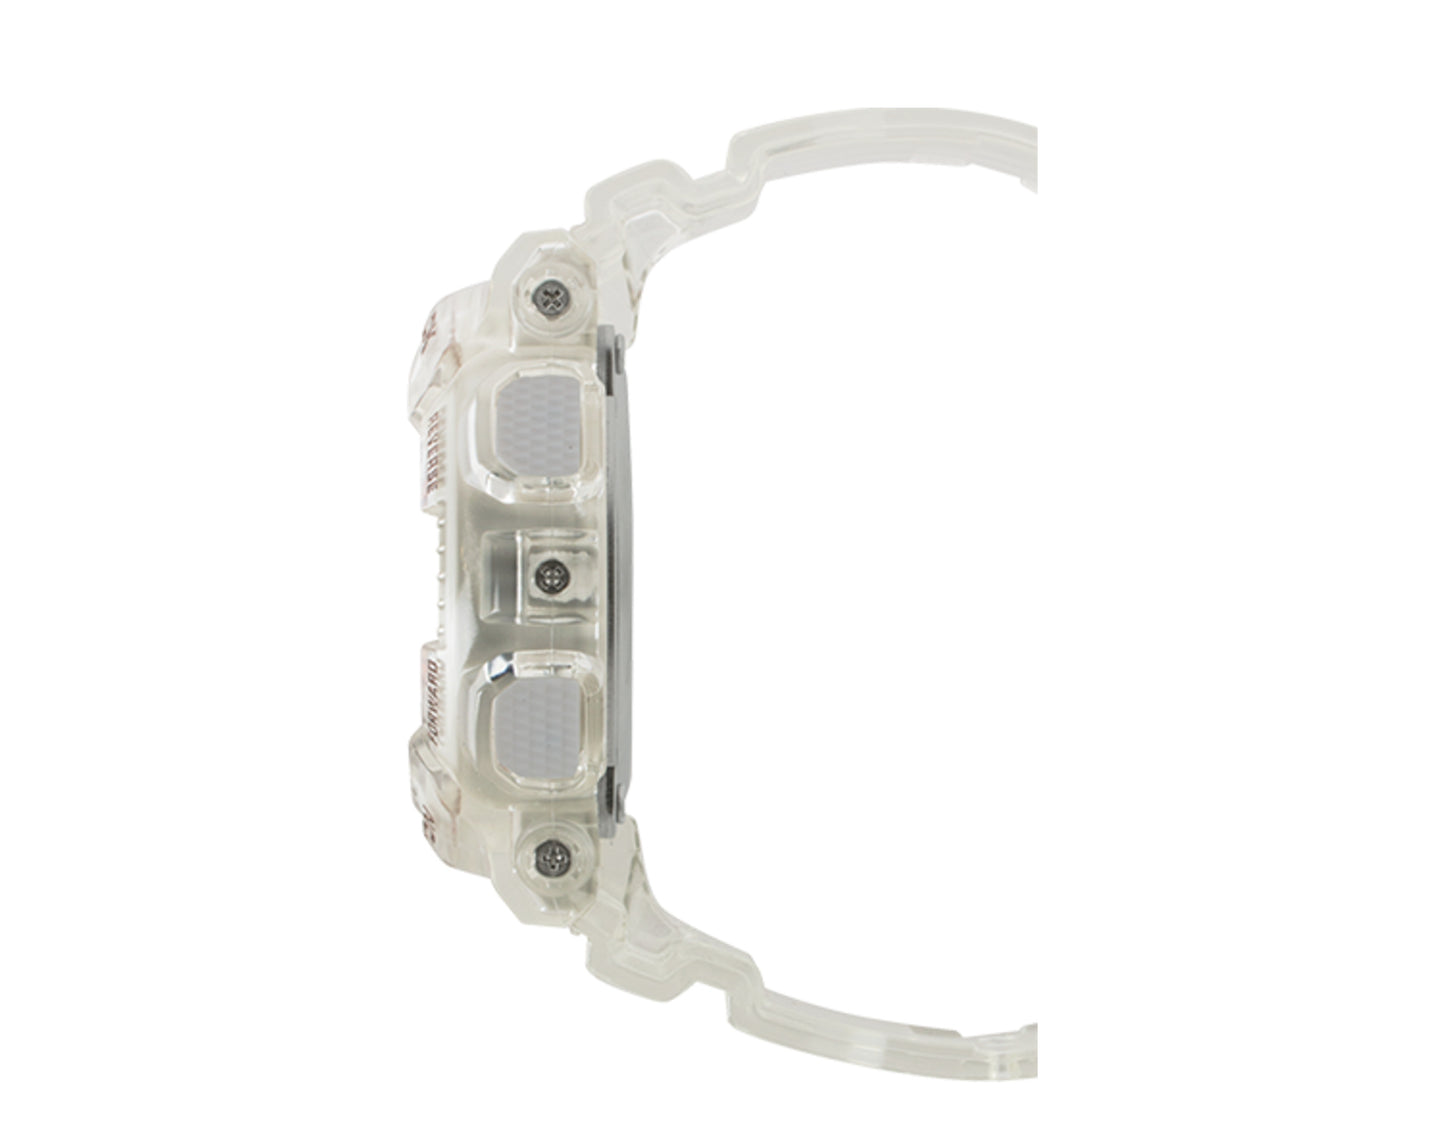 Casio G-Shock GMAS110 Metallic Face Analog-Digital Skeleton Resin Clear Watch GMAS110SR-7A